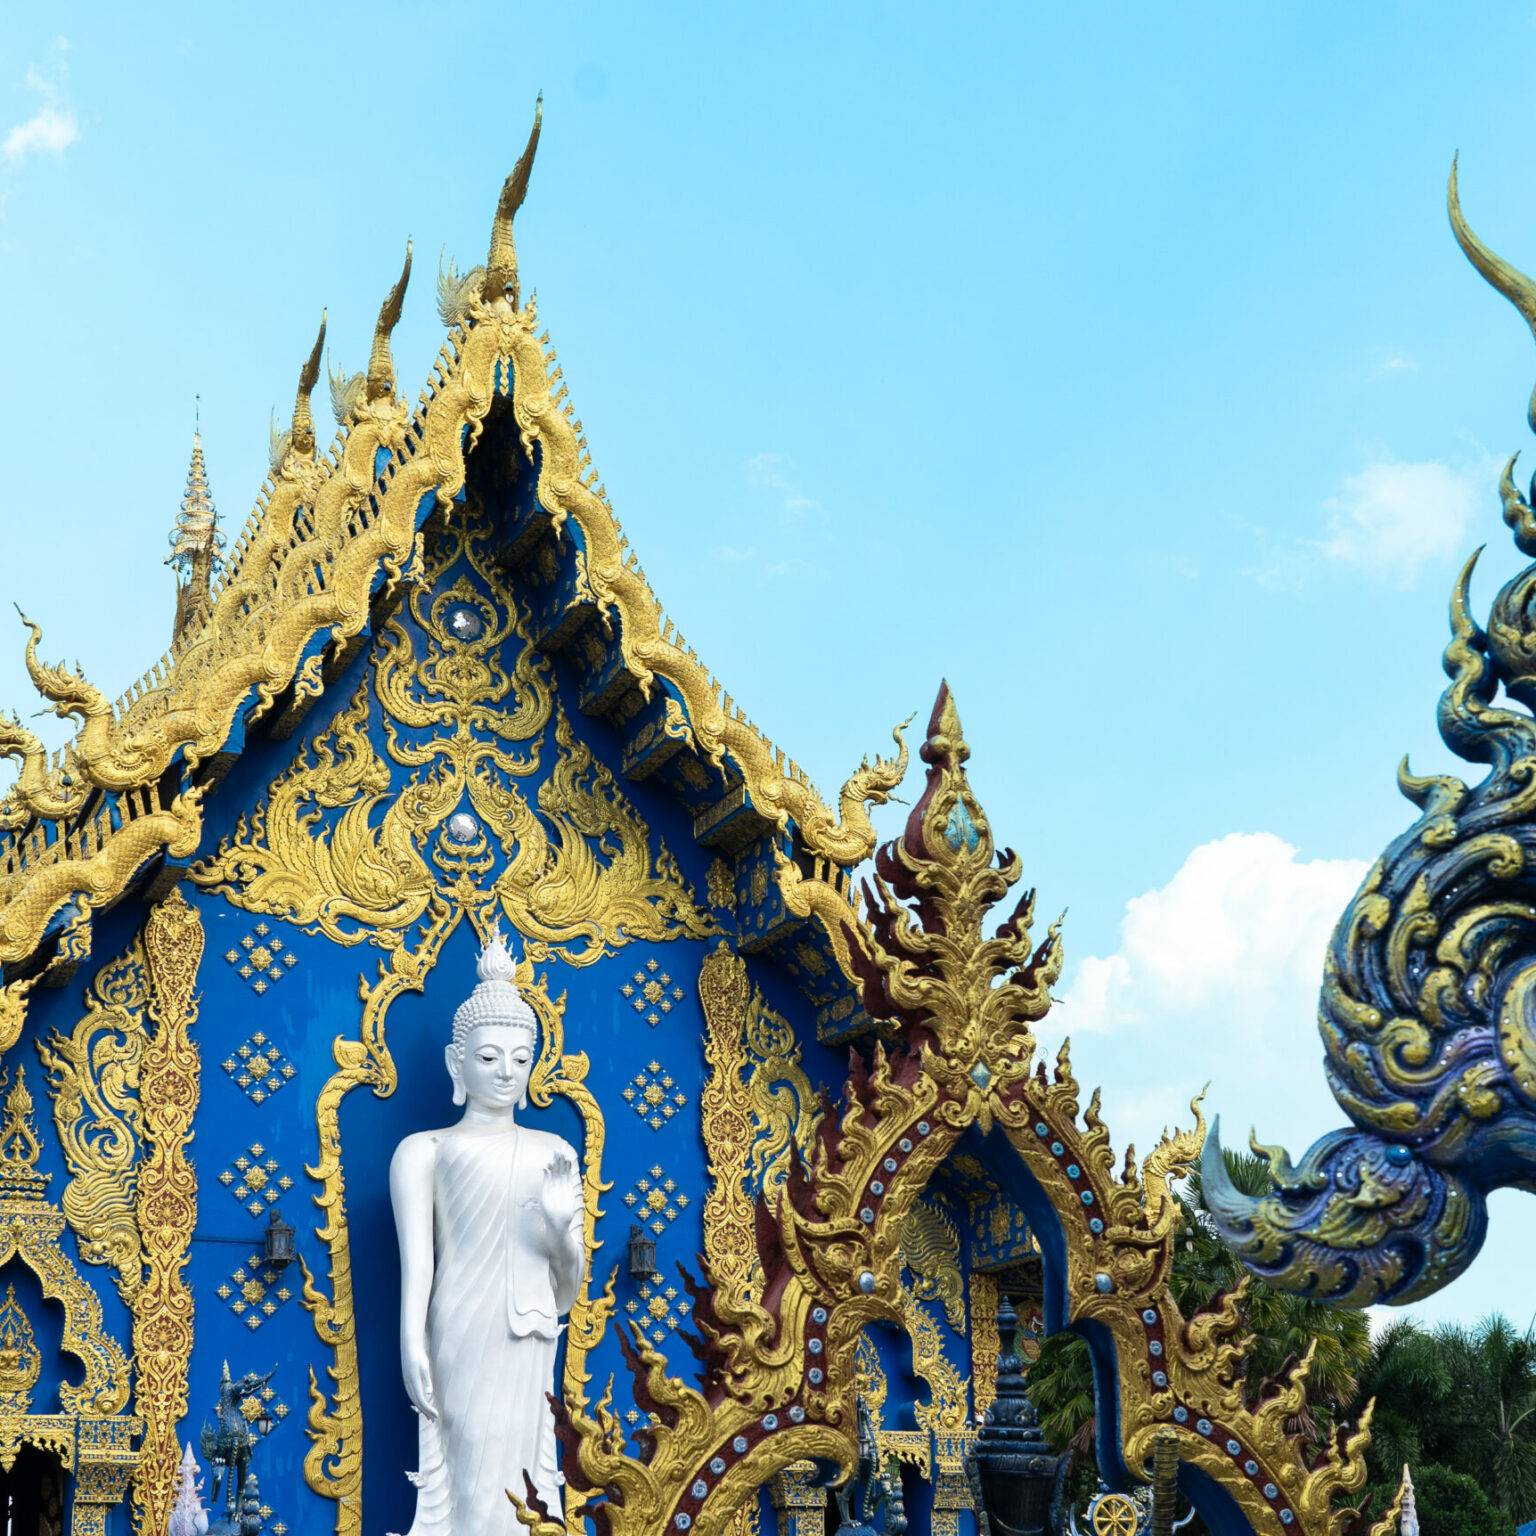 Eine kleine, weiße Buddha-Statue steht vor einer Wand des reich verzierten blauen Tempel.